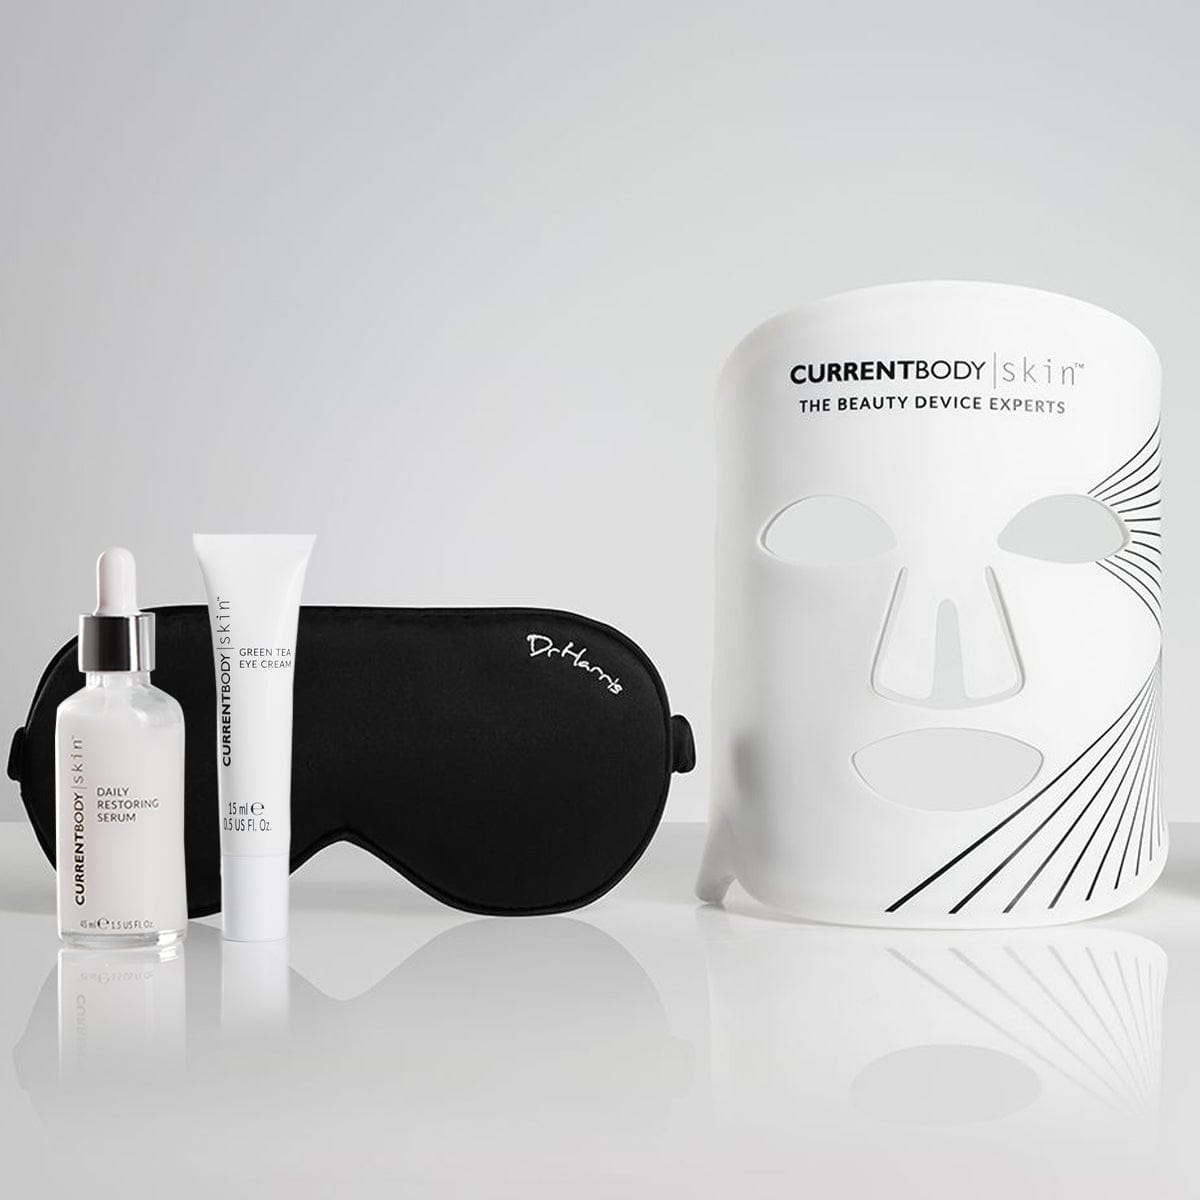 Dr. Harris Revitalise Set & CurrentBody Skin LED Mask Bundle (Worth £398)